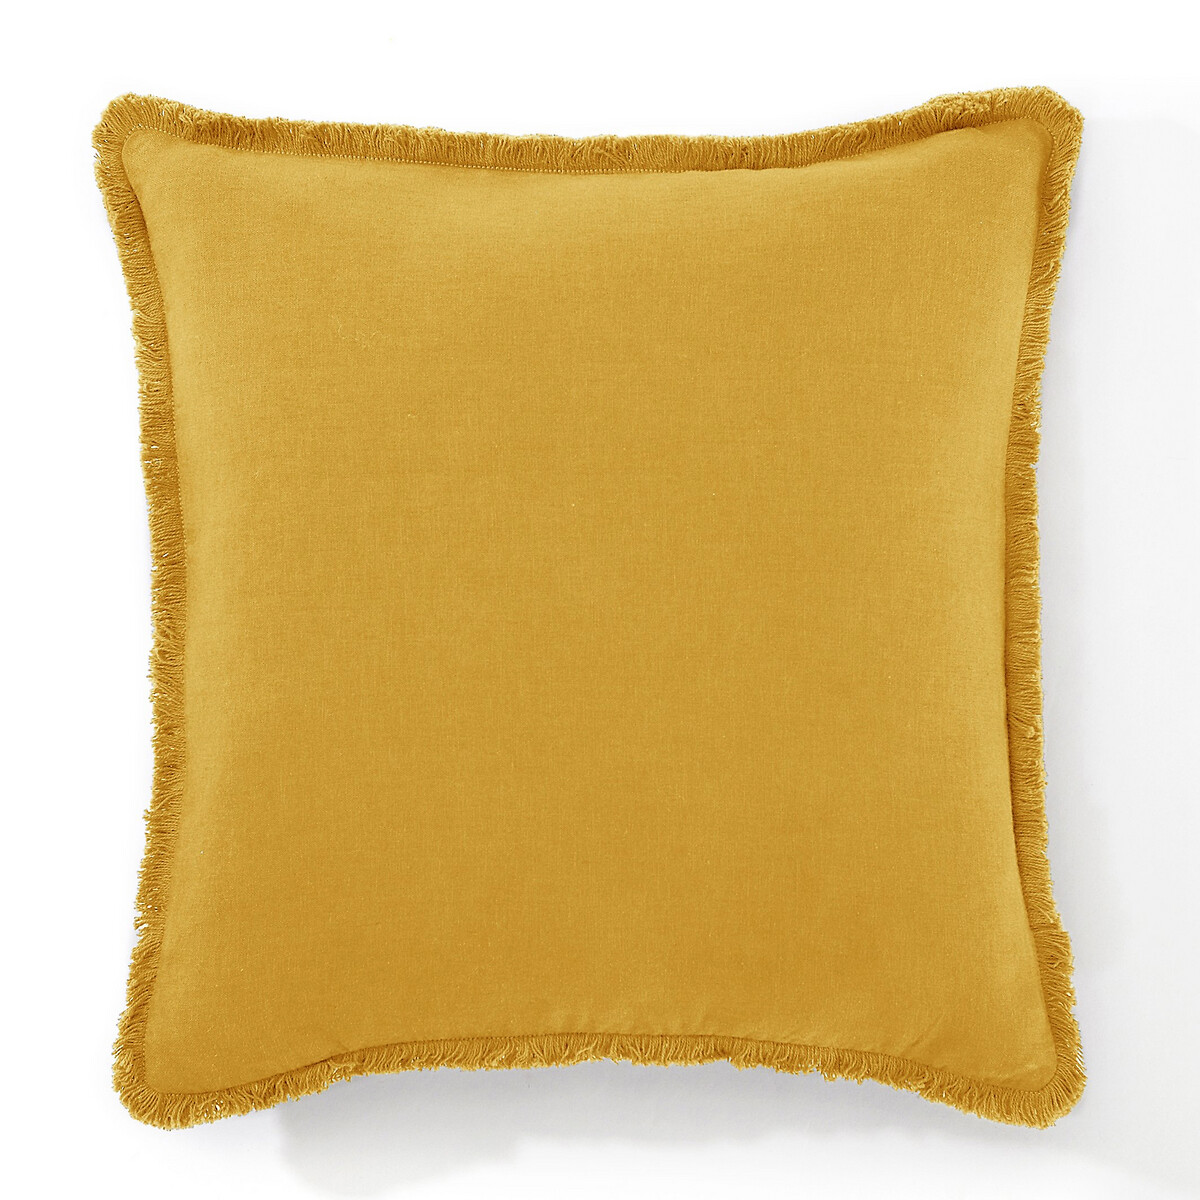 Чехол LaRedoute На подушку из льнавискозы  ODORIE 40 x 40 см желтый, размер 40 x 40 см - фото 1